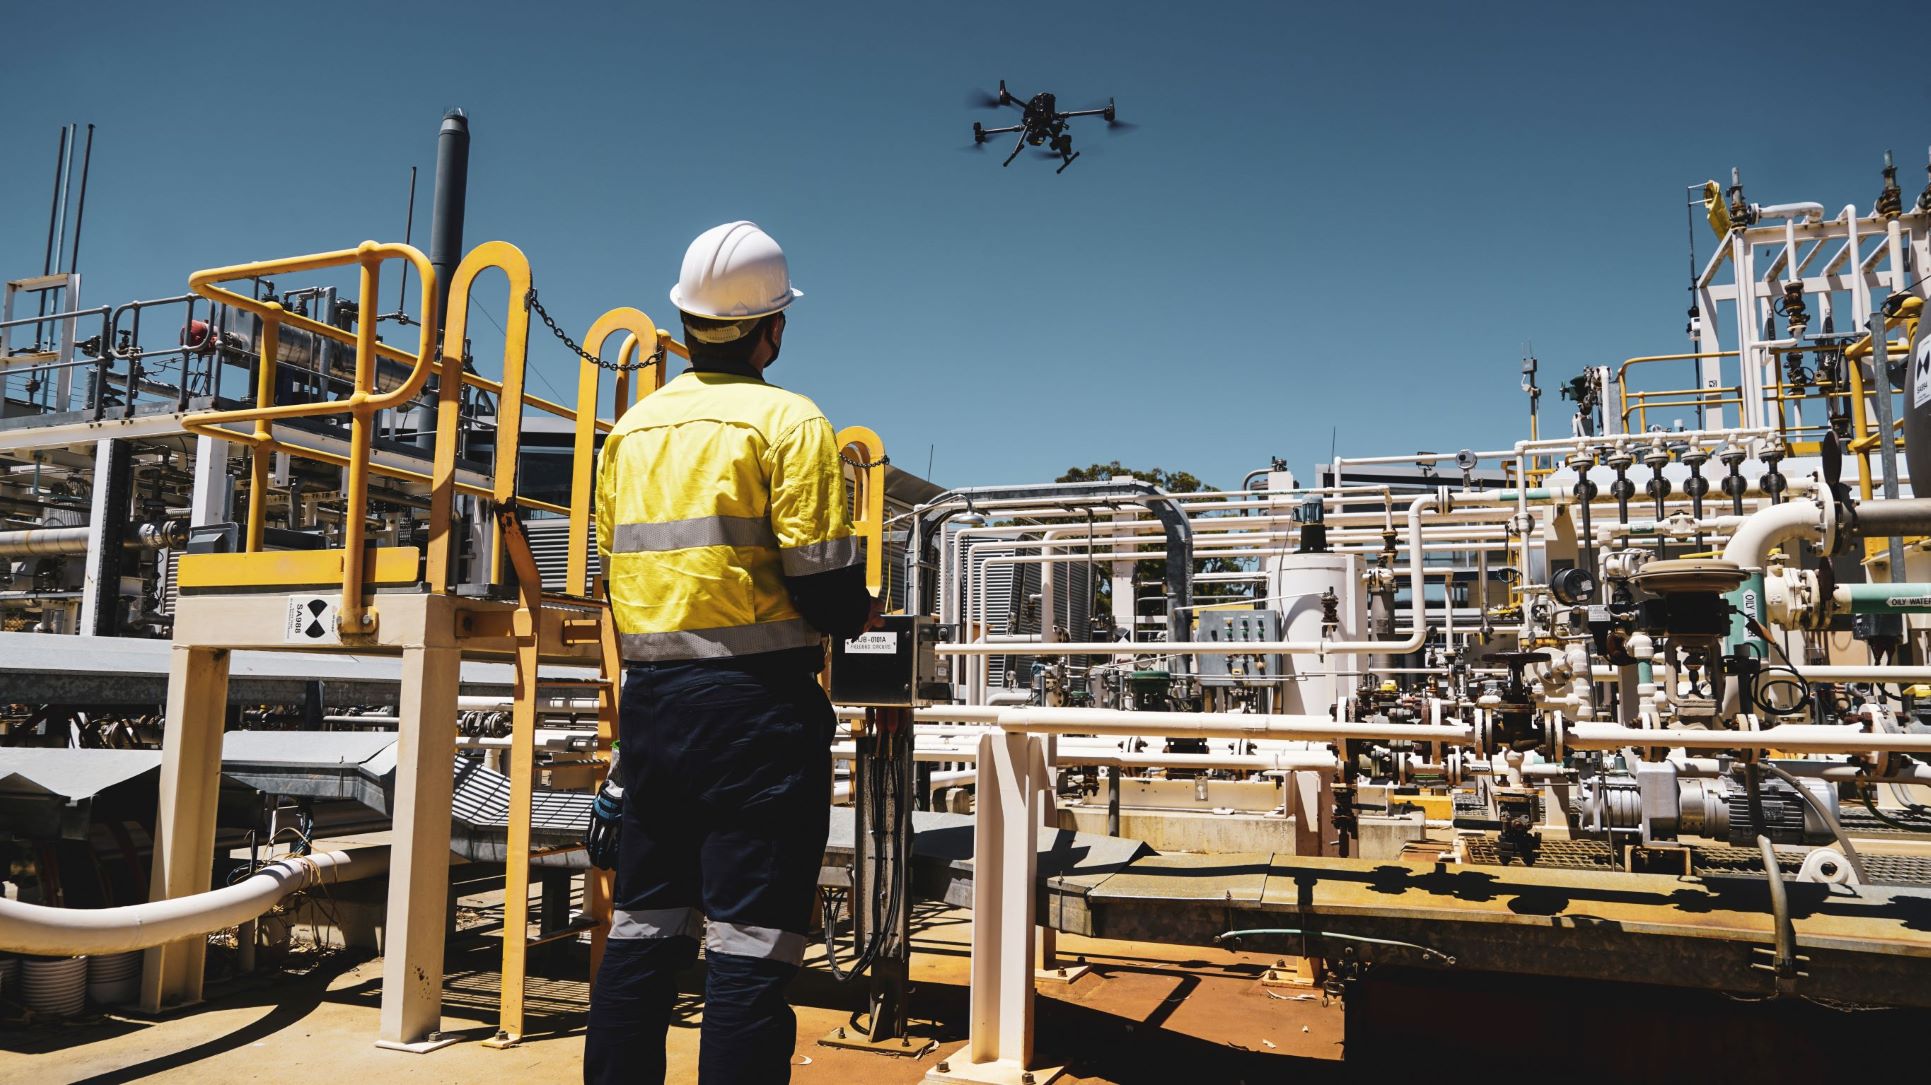 Sensorem staff member flies drone over a construction site.